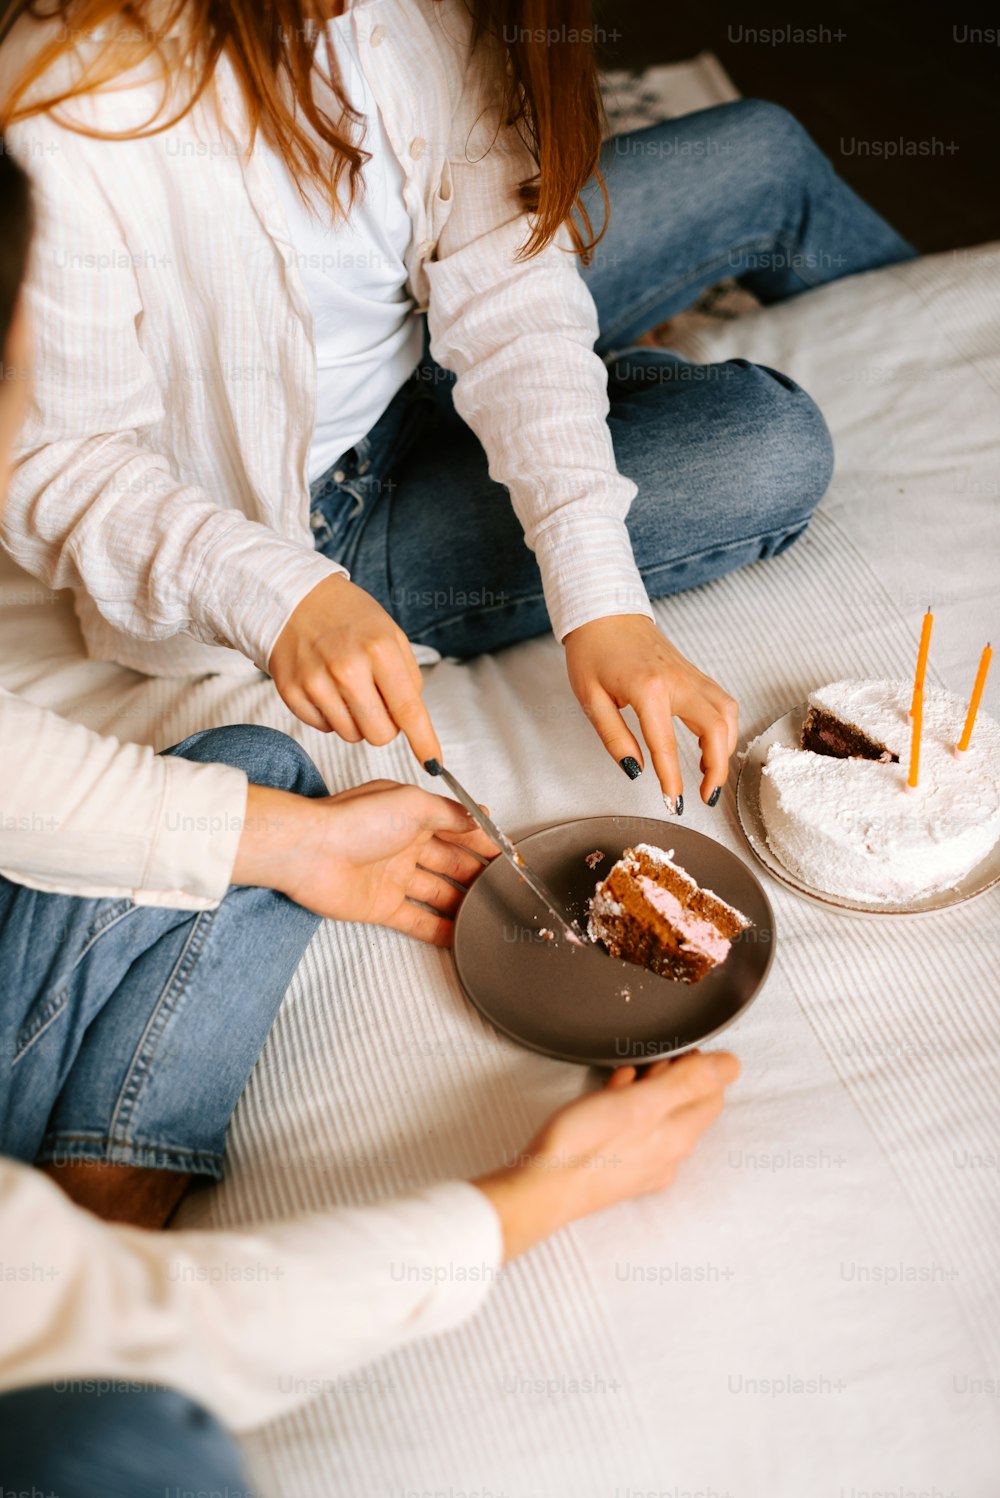 Deux femmes assises sur un lit coupant un gâteau